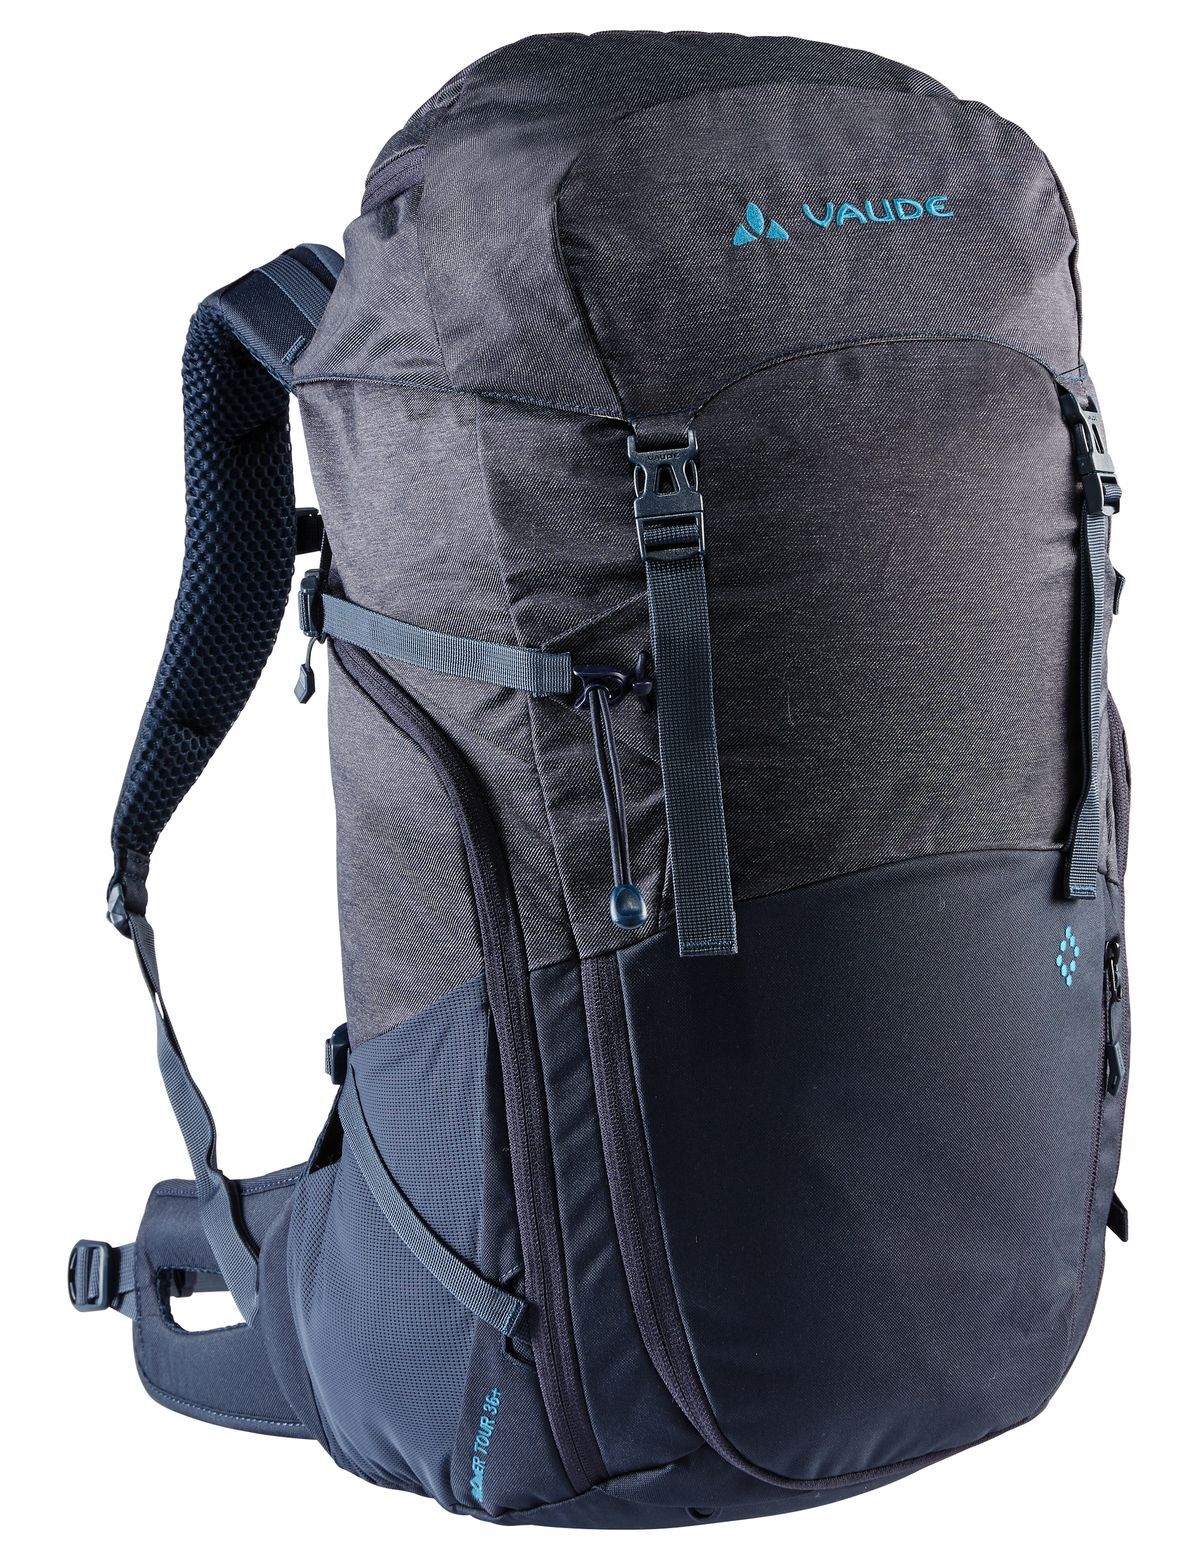 Vaude Skomer Tour 36+ - Walking backpack - WoMen's